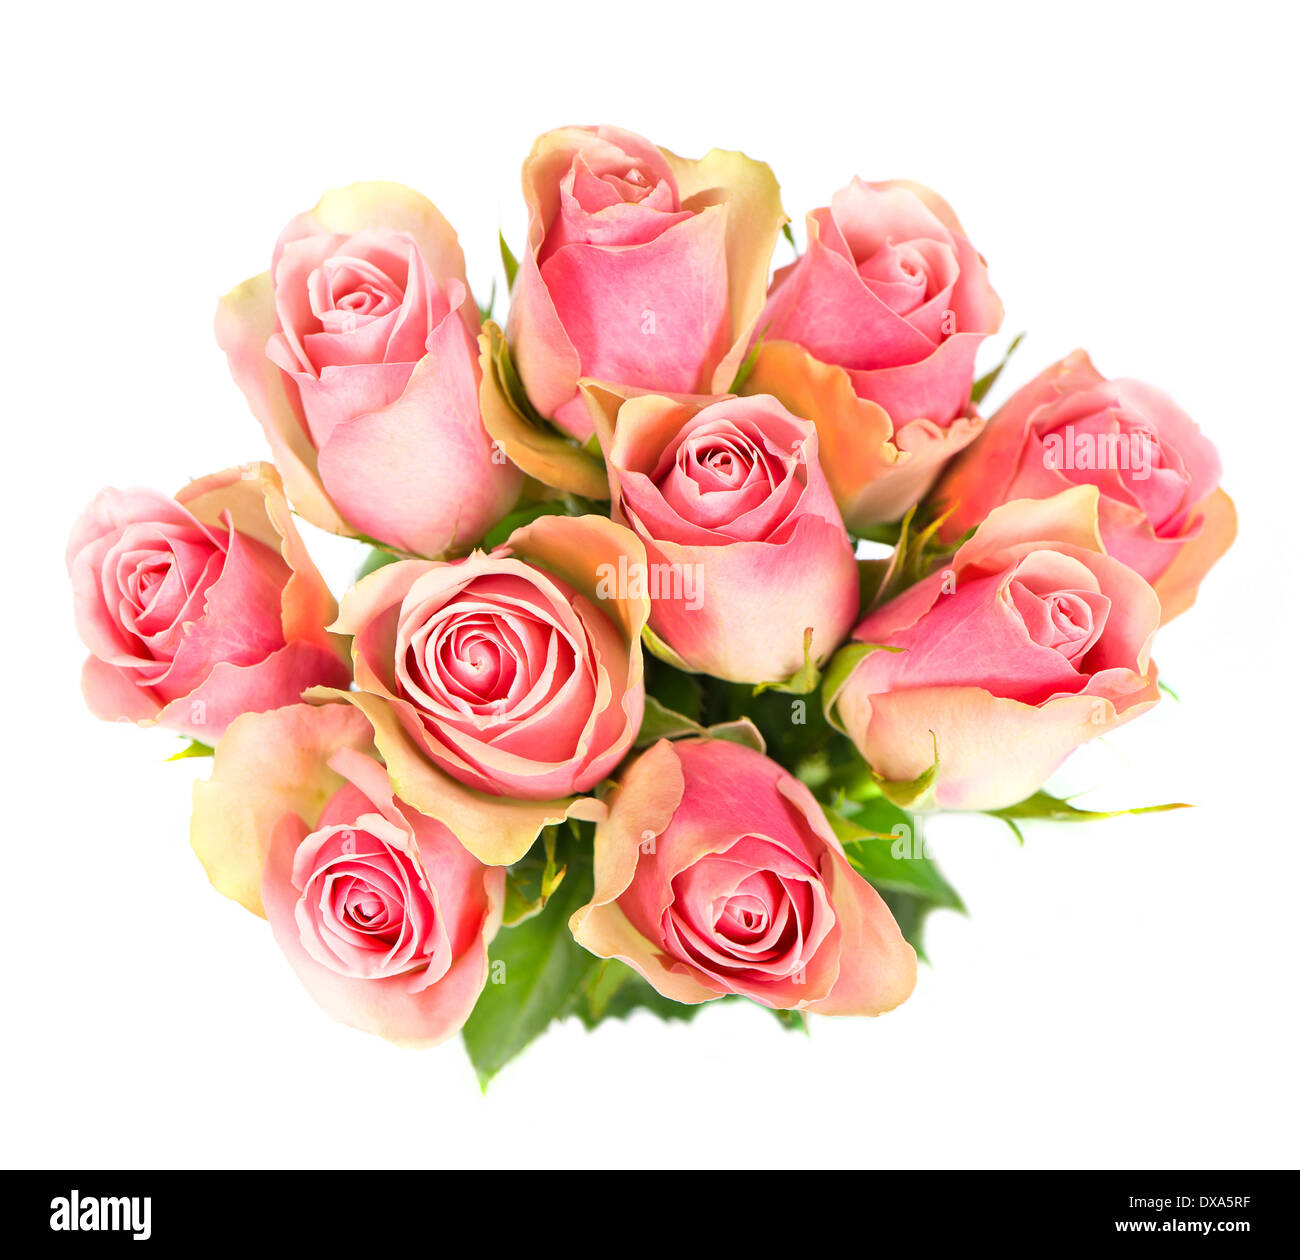 Rosen-Blumen Blumenstrauß isoliert Stockfoto